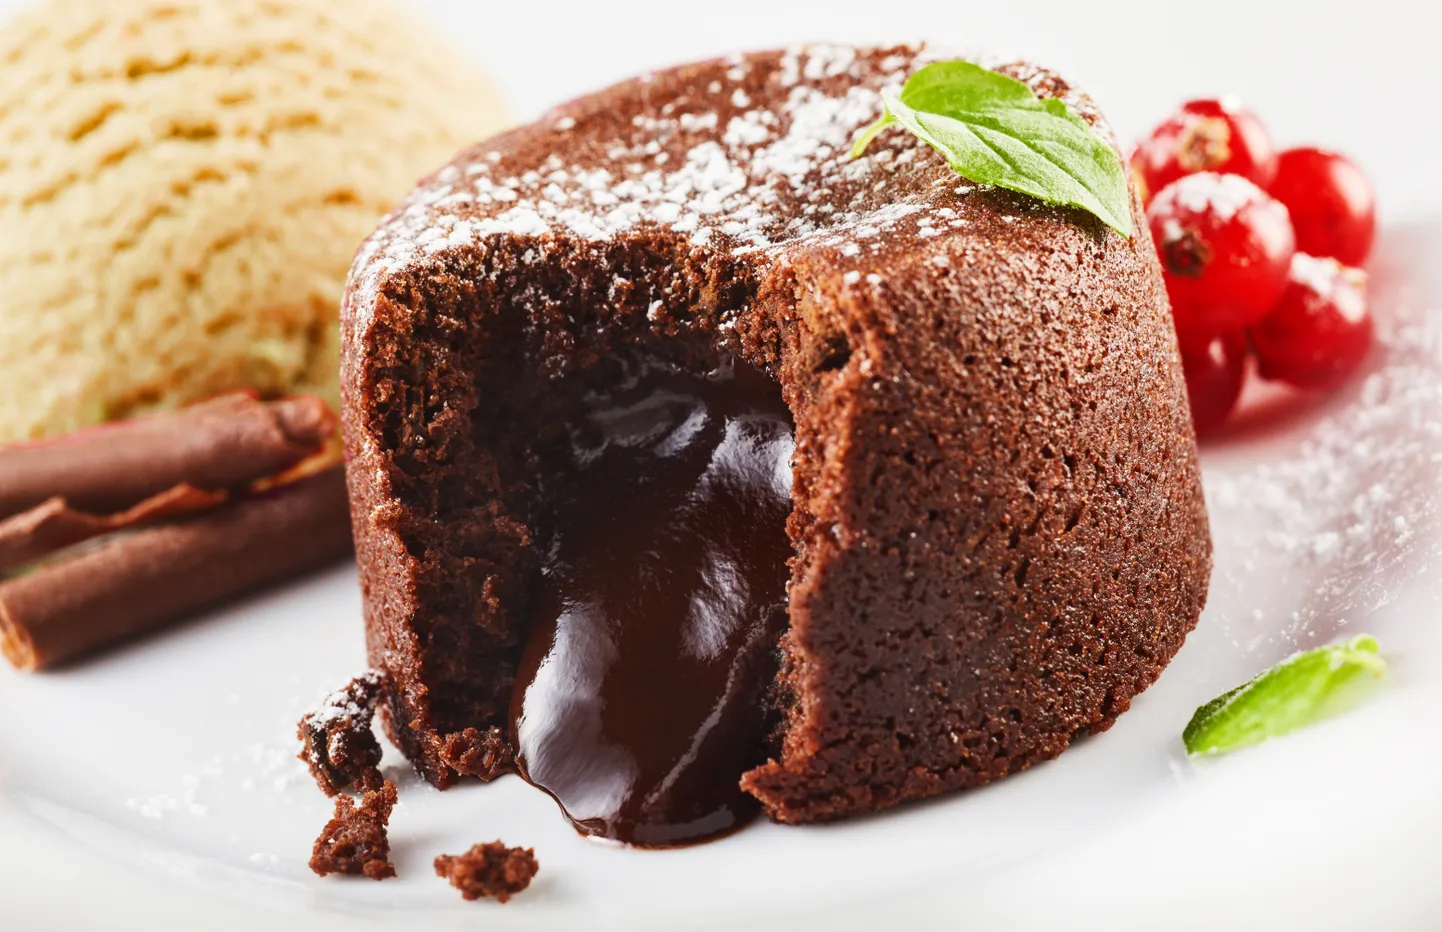 Общеизвестно, что углеводами богаты сладости. Шоколадное пирожное с жидкой начинкой. Иллюстративное фото.